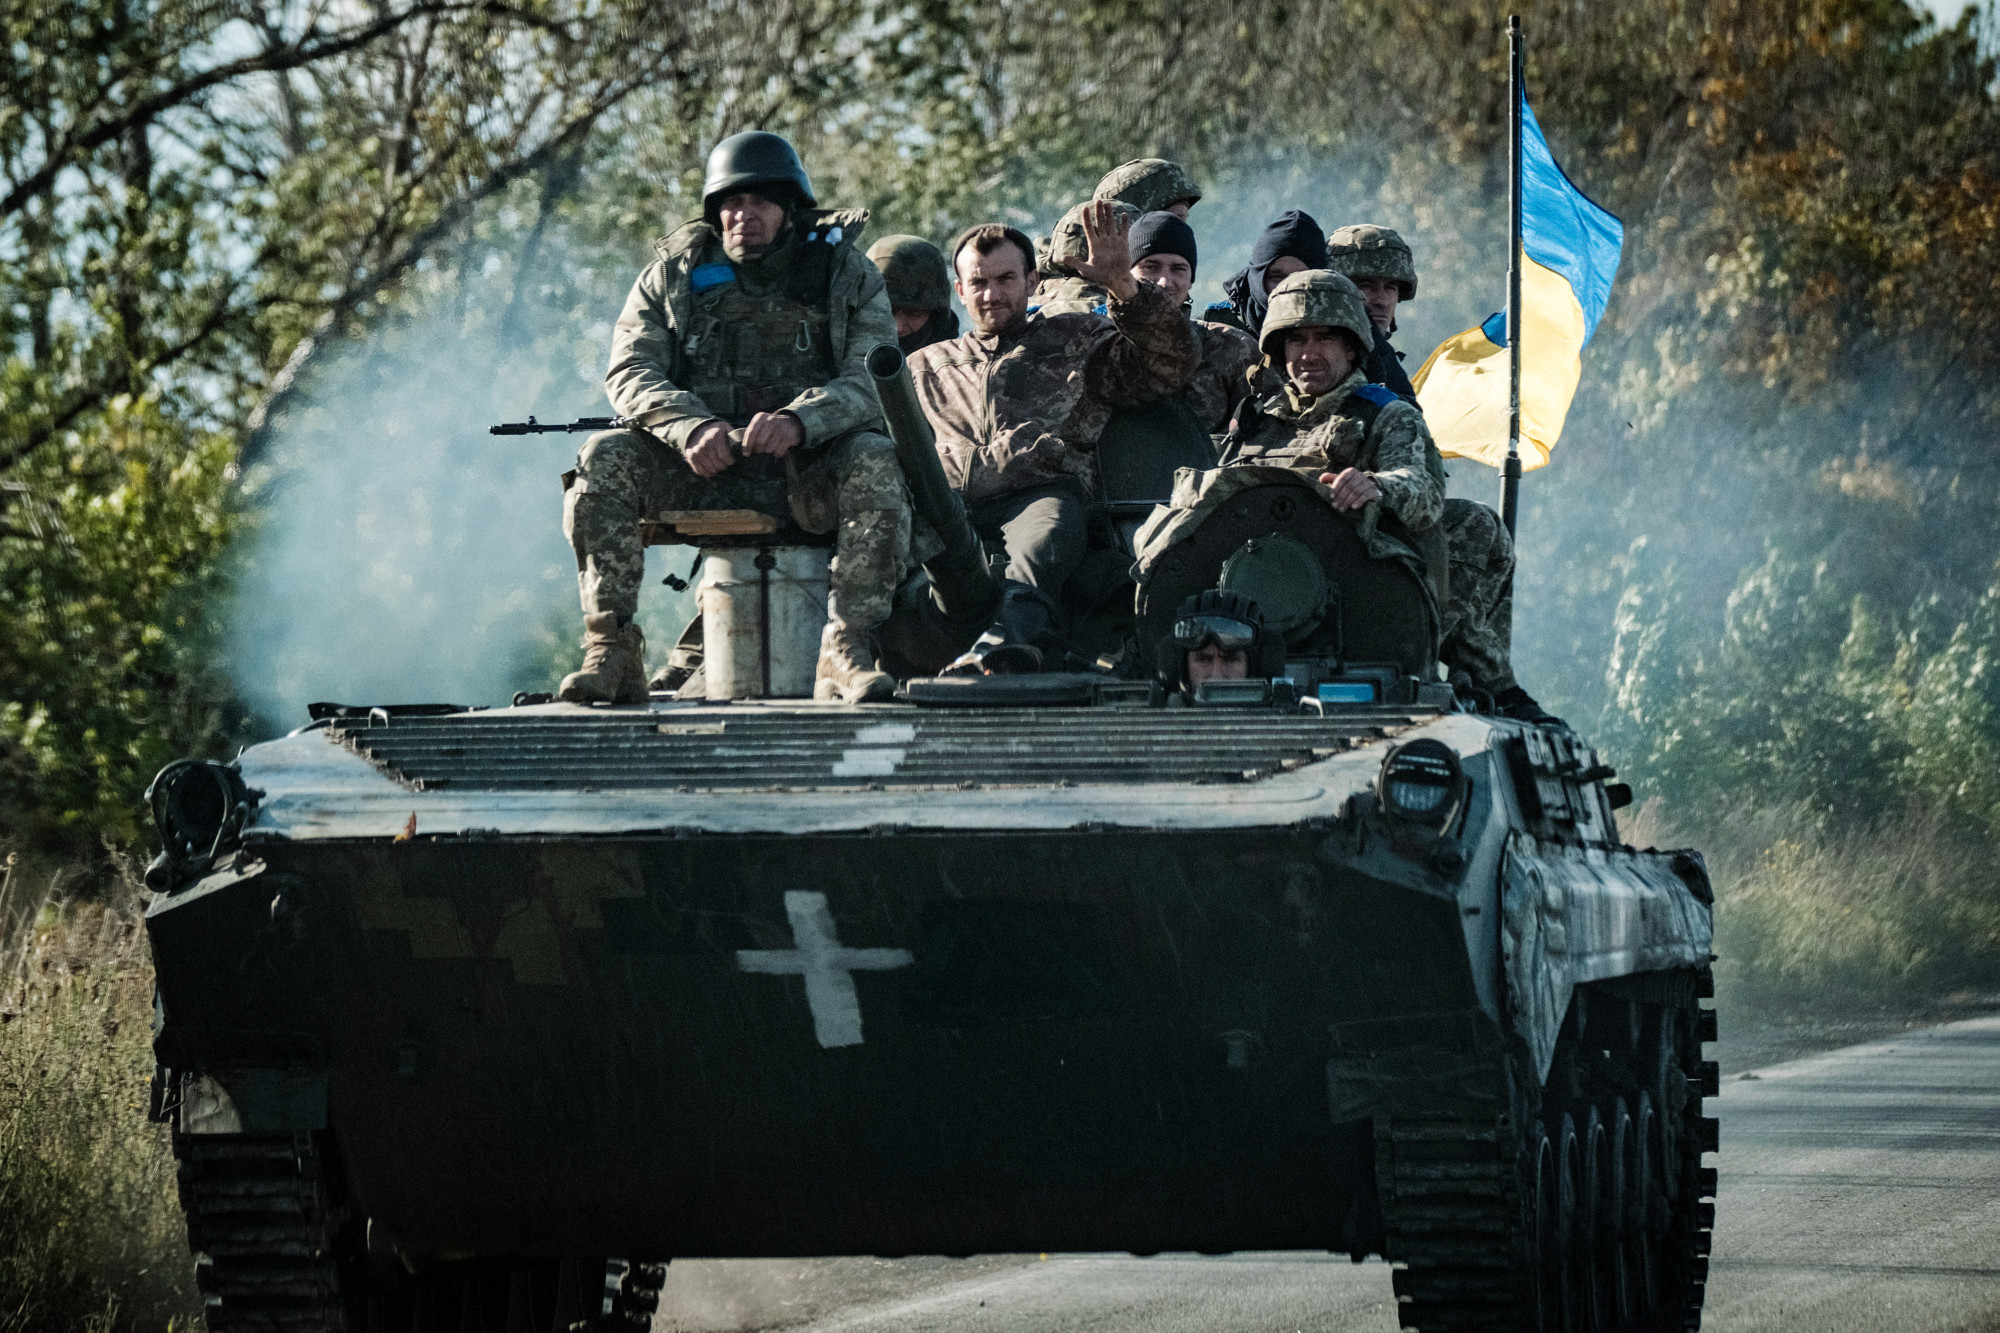 Ráfordulnak Luhanszk felszabadítására az ukránok